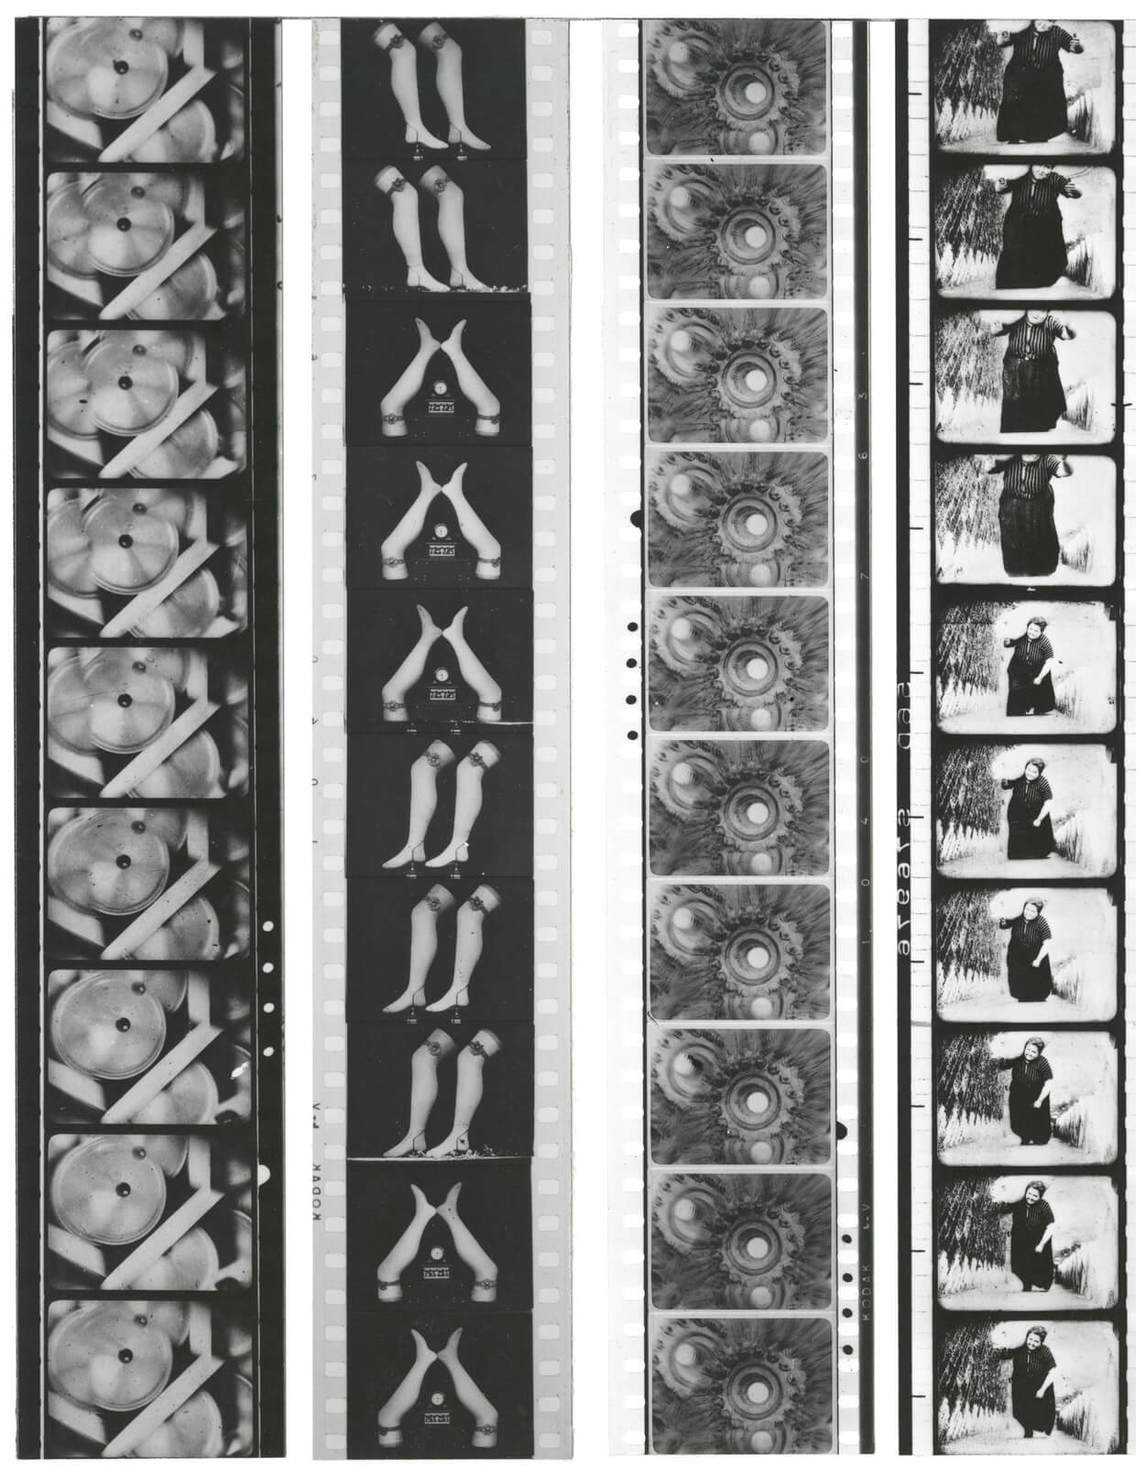 Mechanical Ballet (Ballet mécanique), by Fernand Léger, 1924.